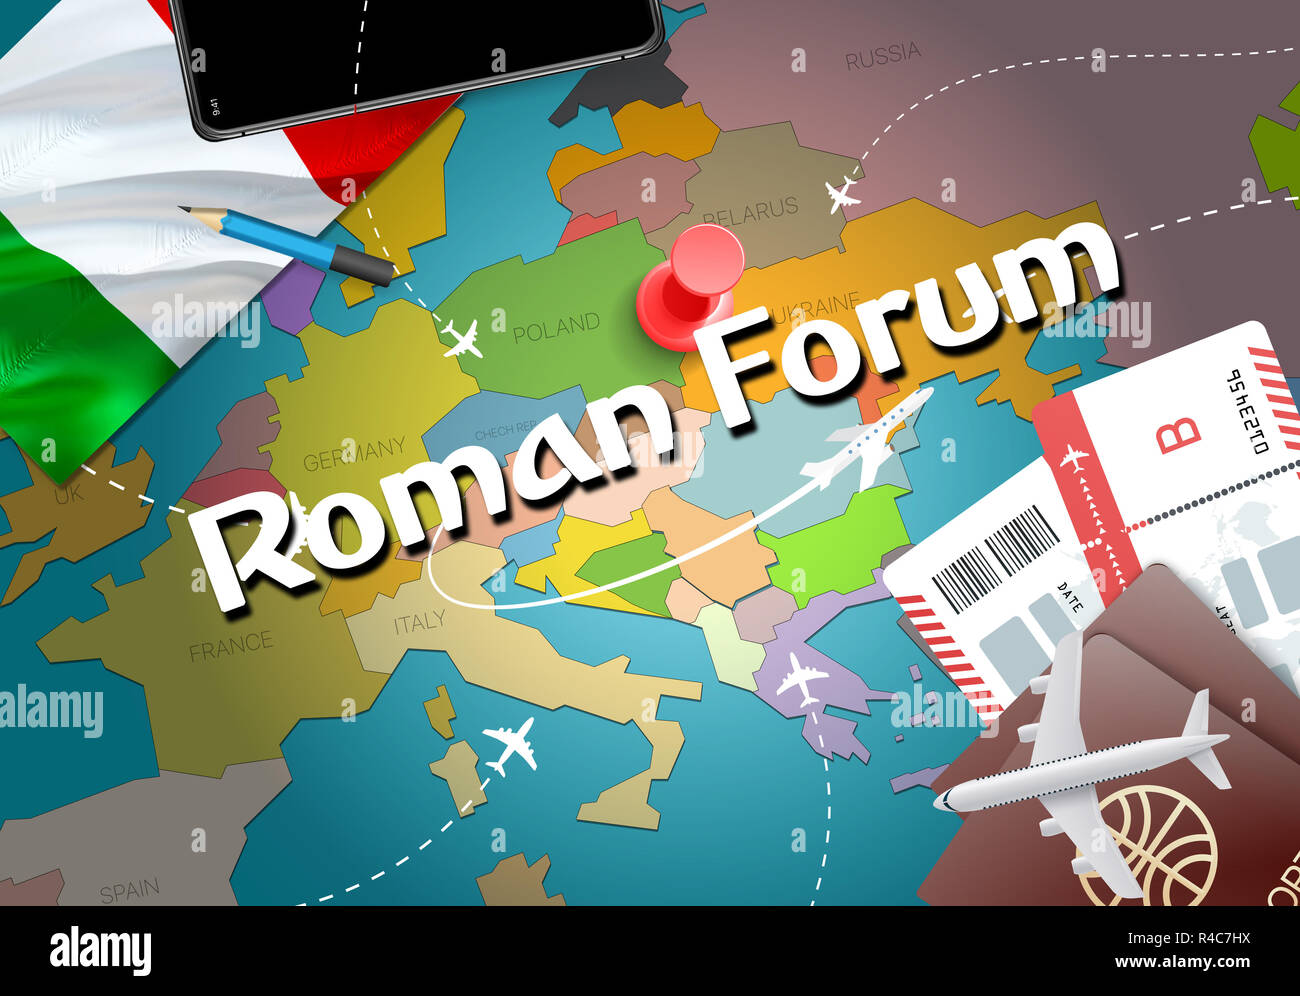 Forum Romanum Stadt Reisen und Tourismus Ziel Konzept. Italien Flagge und Forum Romanum Ort auf der Karte zeigen. Italien Travel Concept Map Hintergrund. Tickets Ebenen a Stockfoto